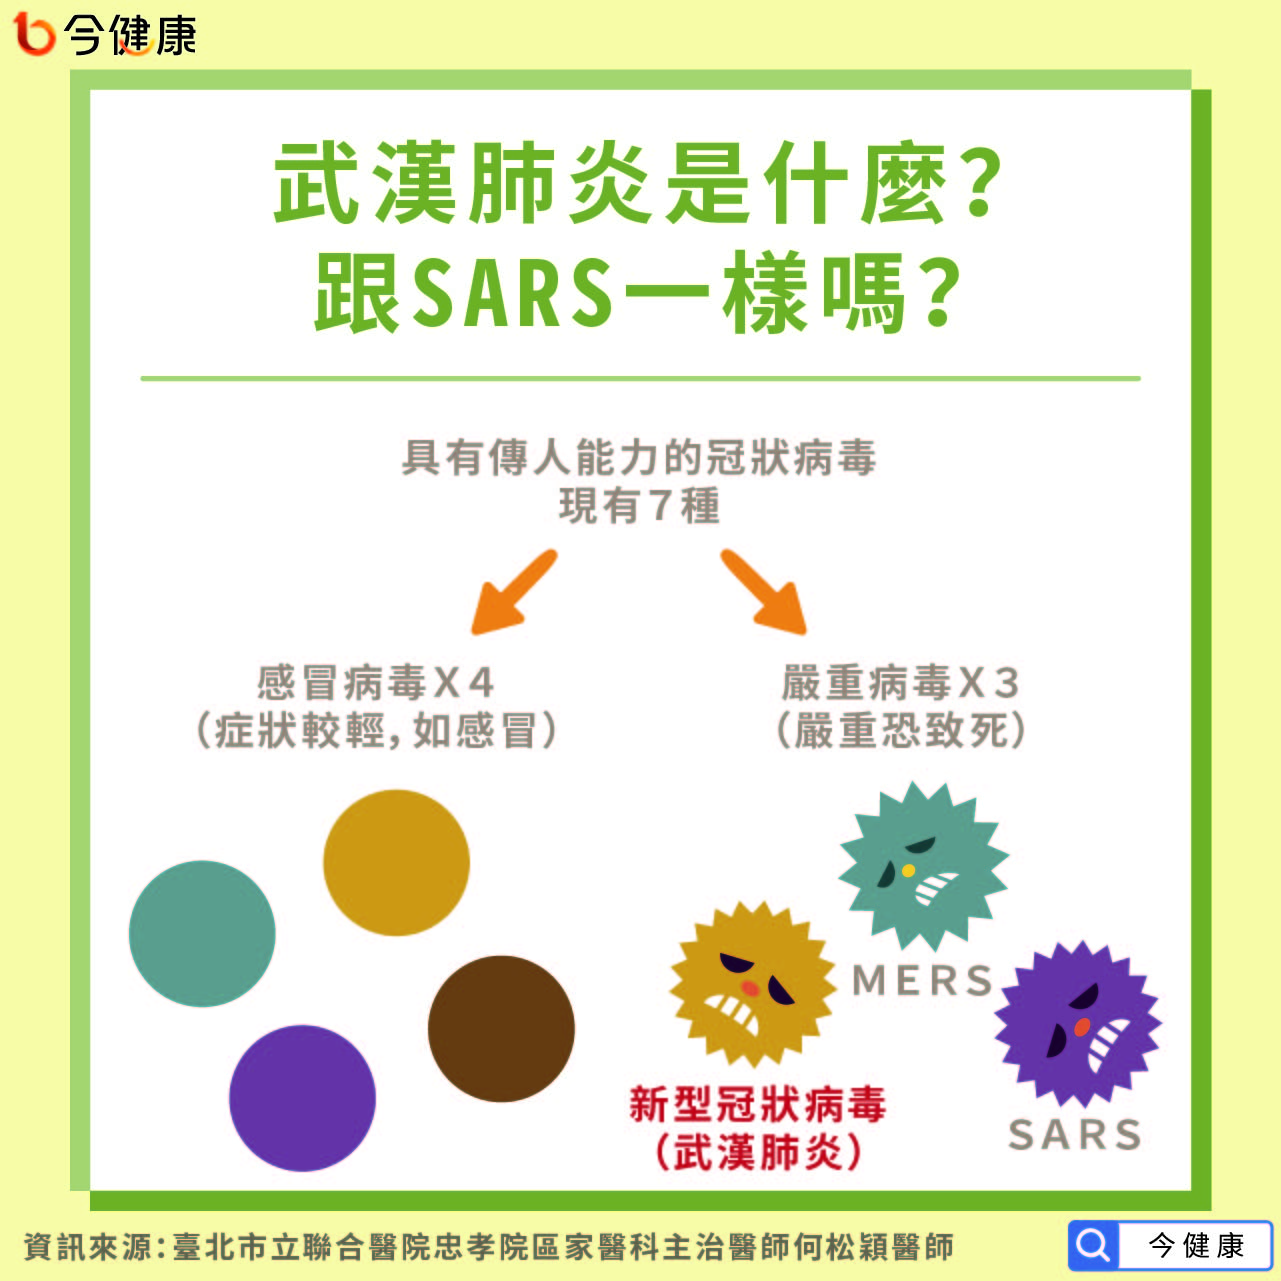 武漢肺炎是什麼？跟SARS一樣嗎？